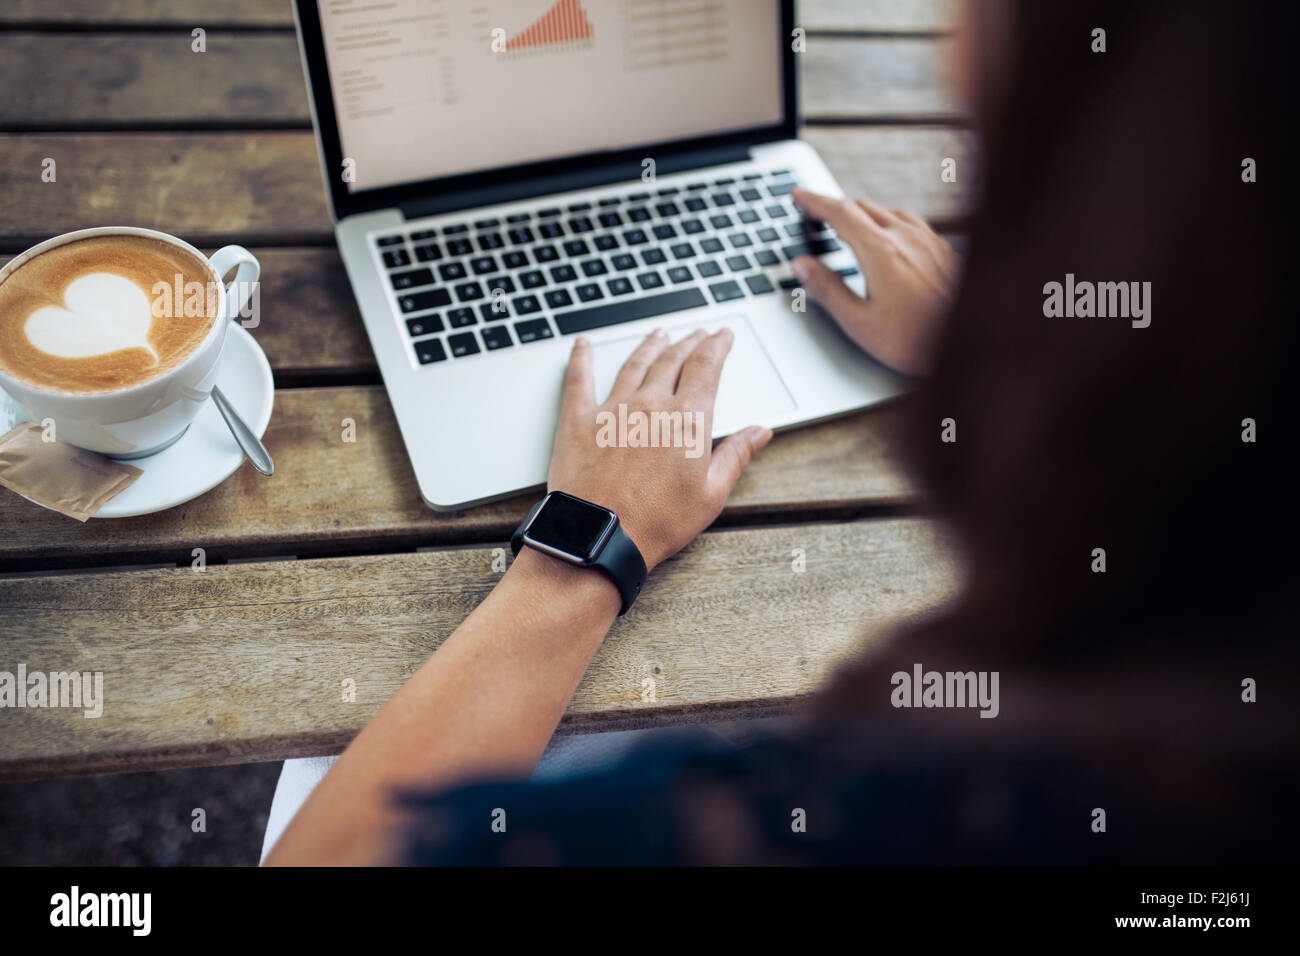 La donna la digitazione sulla tastiera di un computer portatile con una tazza di caffè sul tavolo di legno. Donna che indossa un smartwatch presso il cafe. Foto Stock